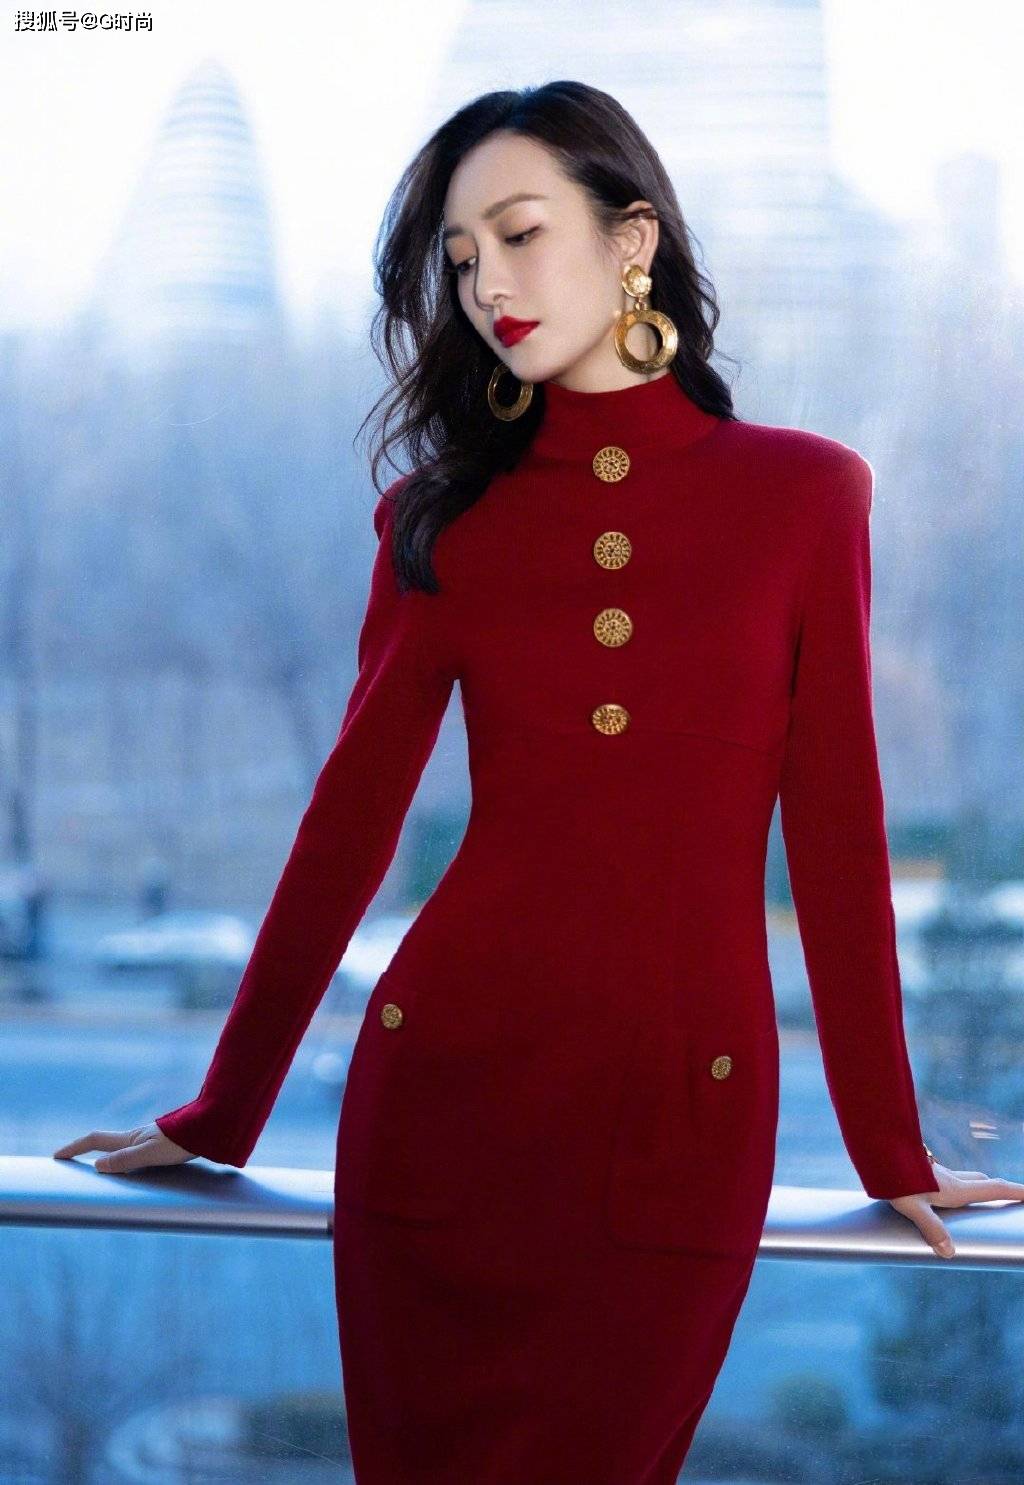 秦岚酒红丝绒裙高贵优雅 长腿美背演绎冬日时尚 -- 眼界，放眼世界